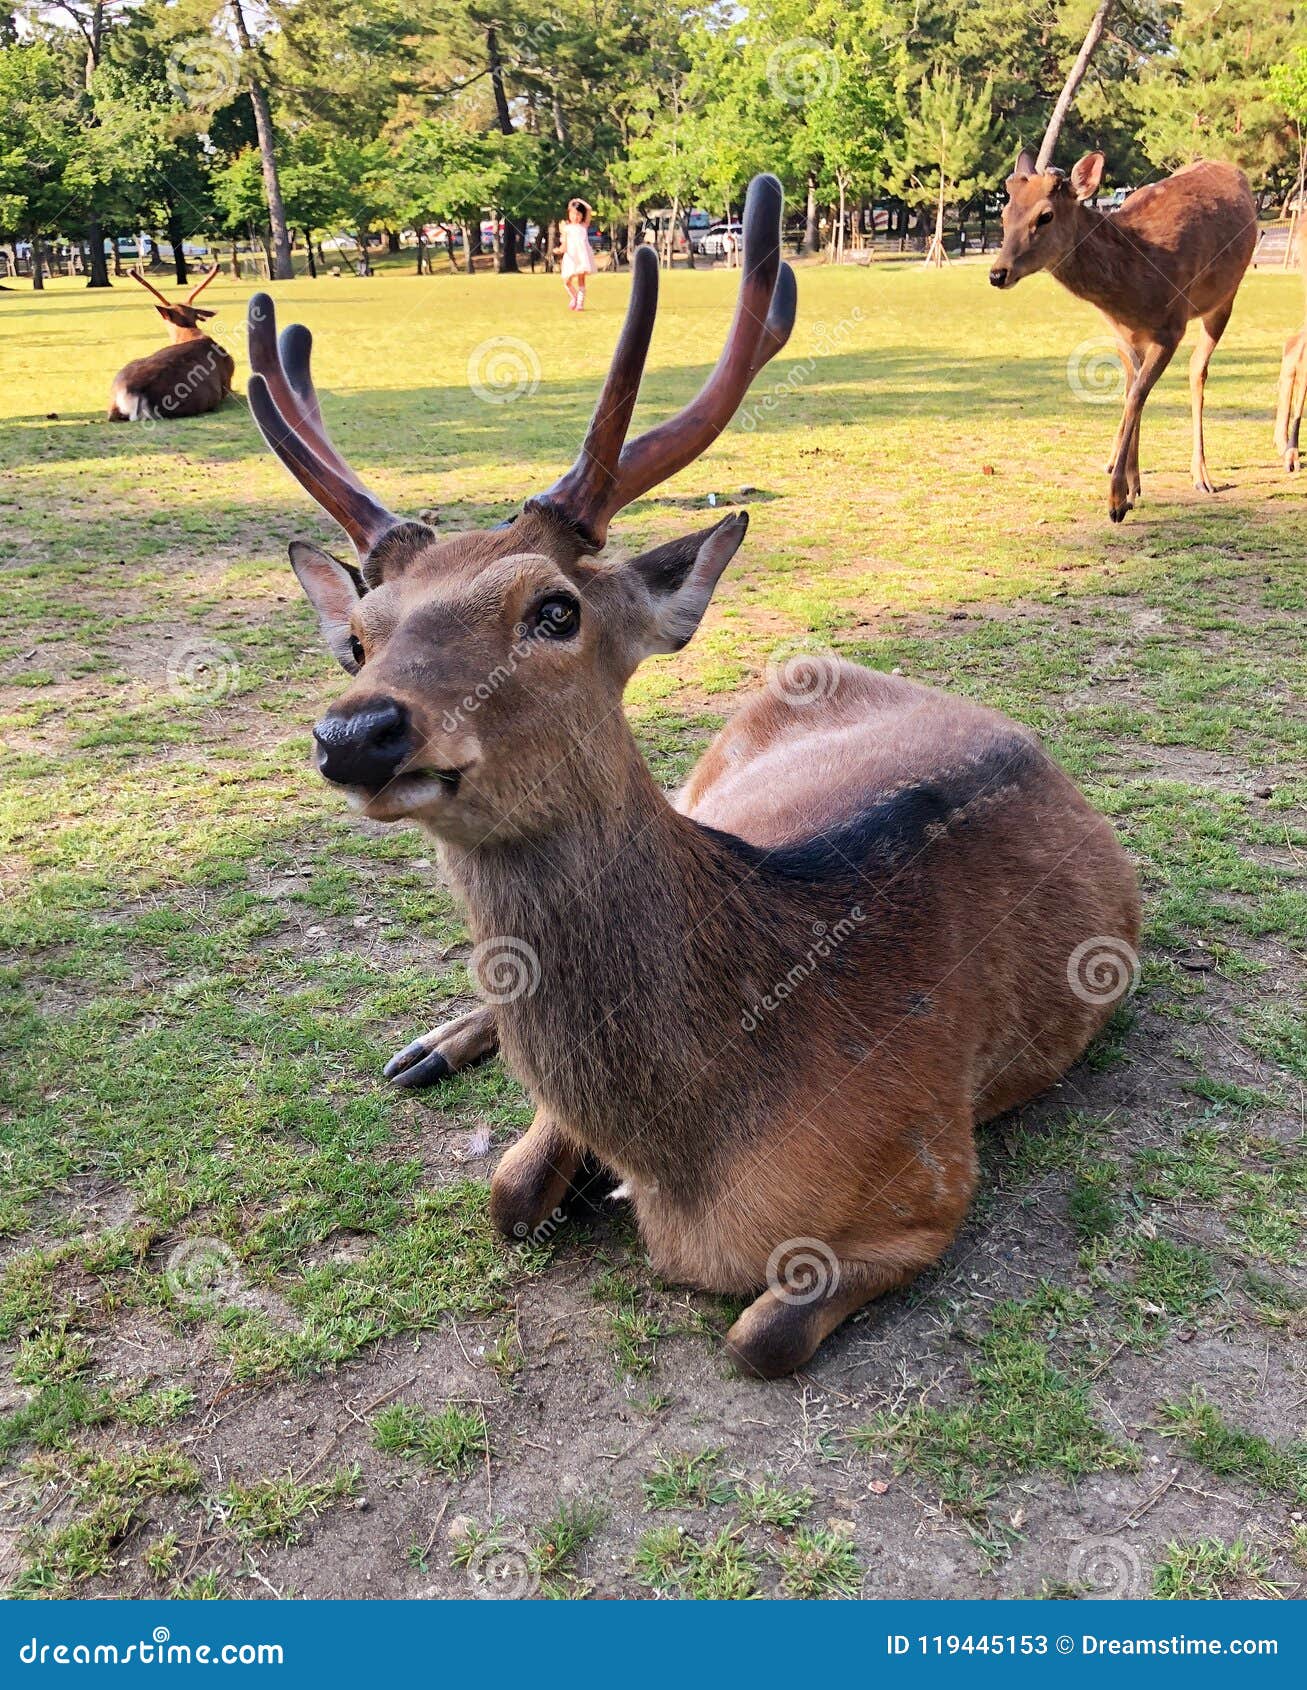 japan guide nara deer park